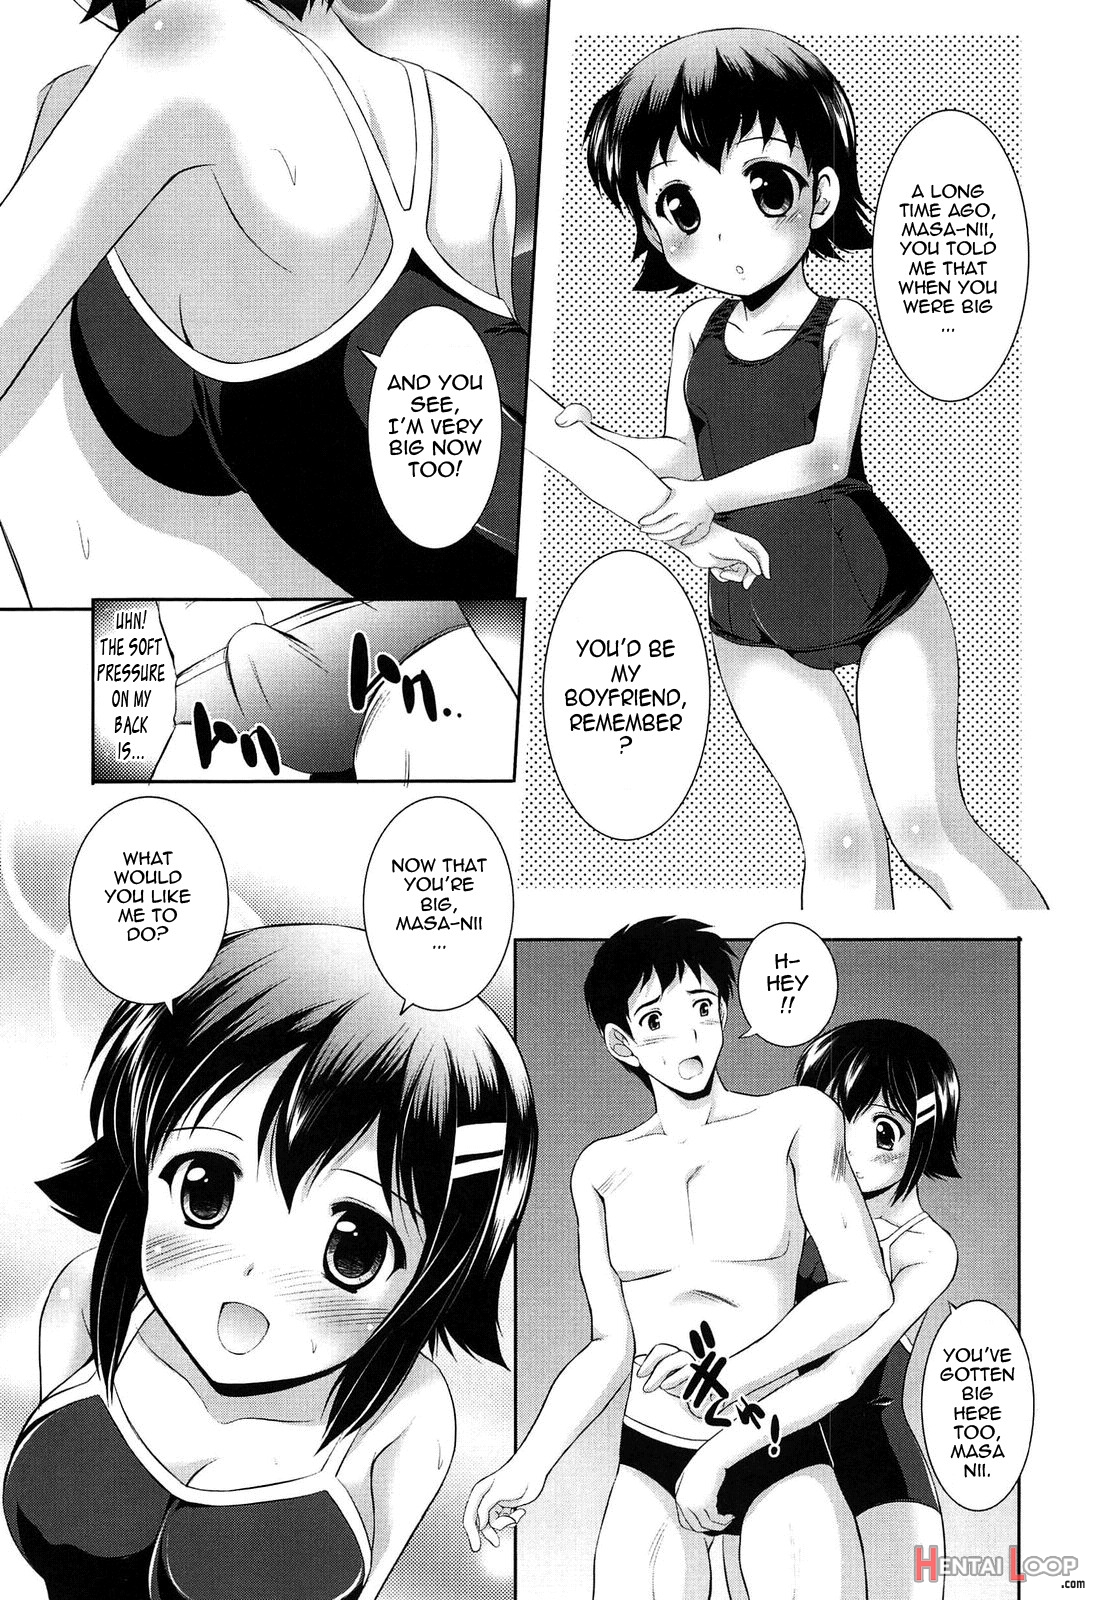 Toshishitakko! Celebration - Younger Girls! Celebration page 106